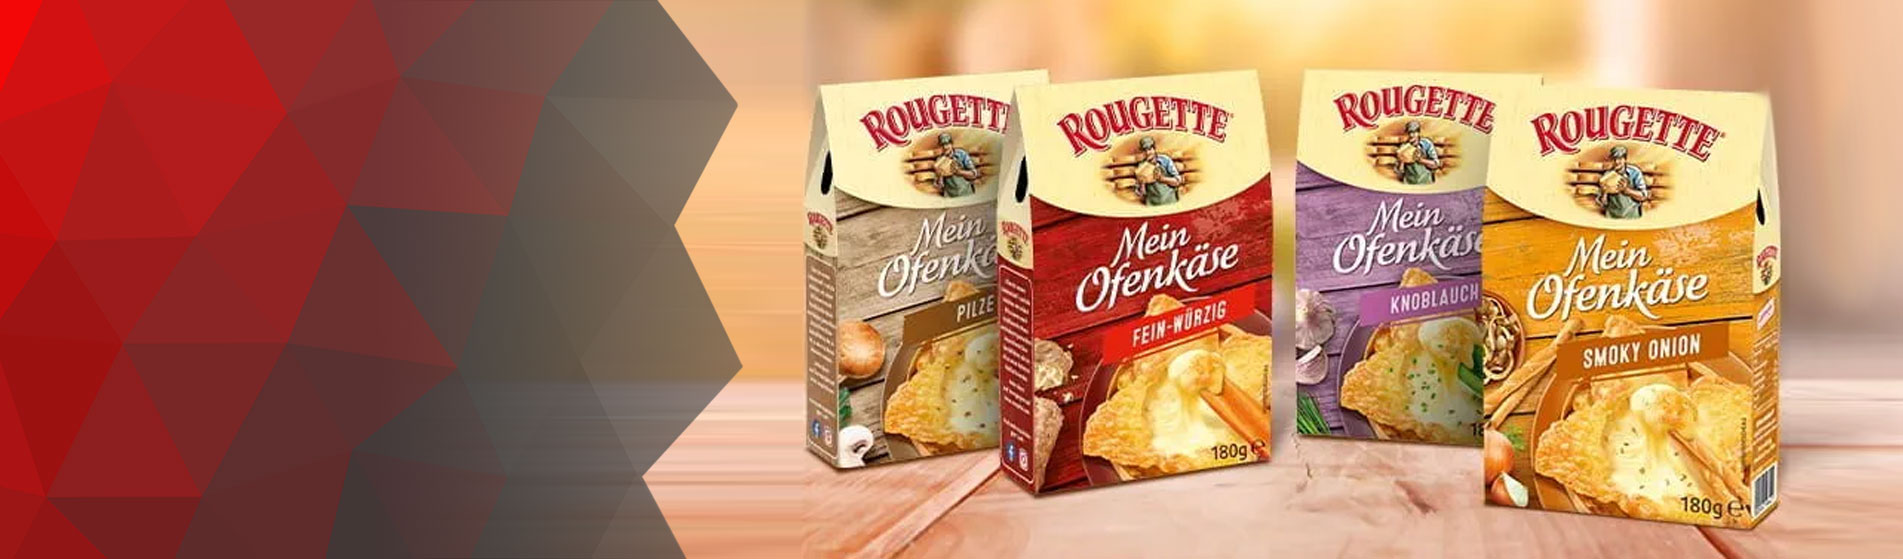 Website für Rougette Ofenkäse